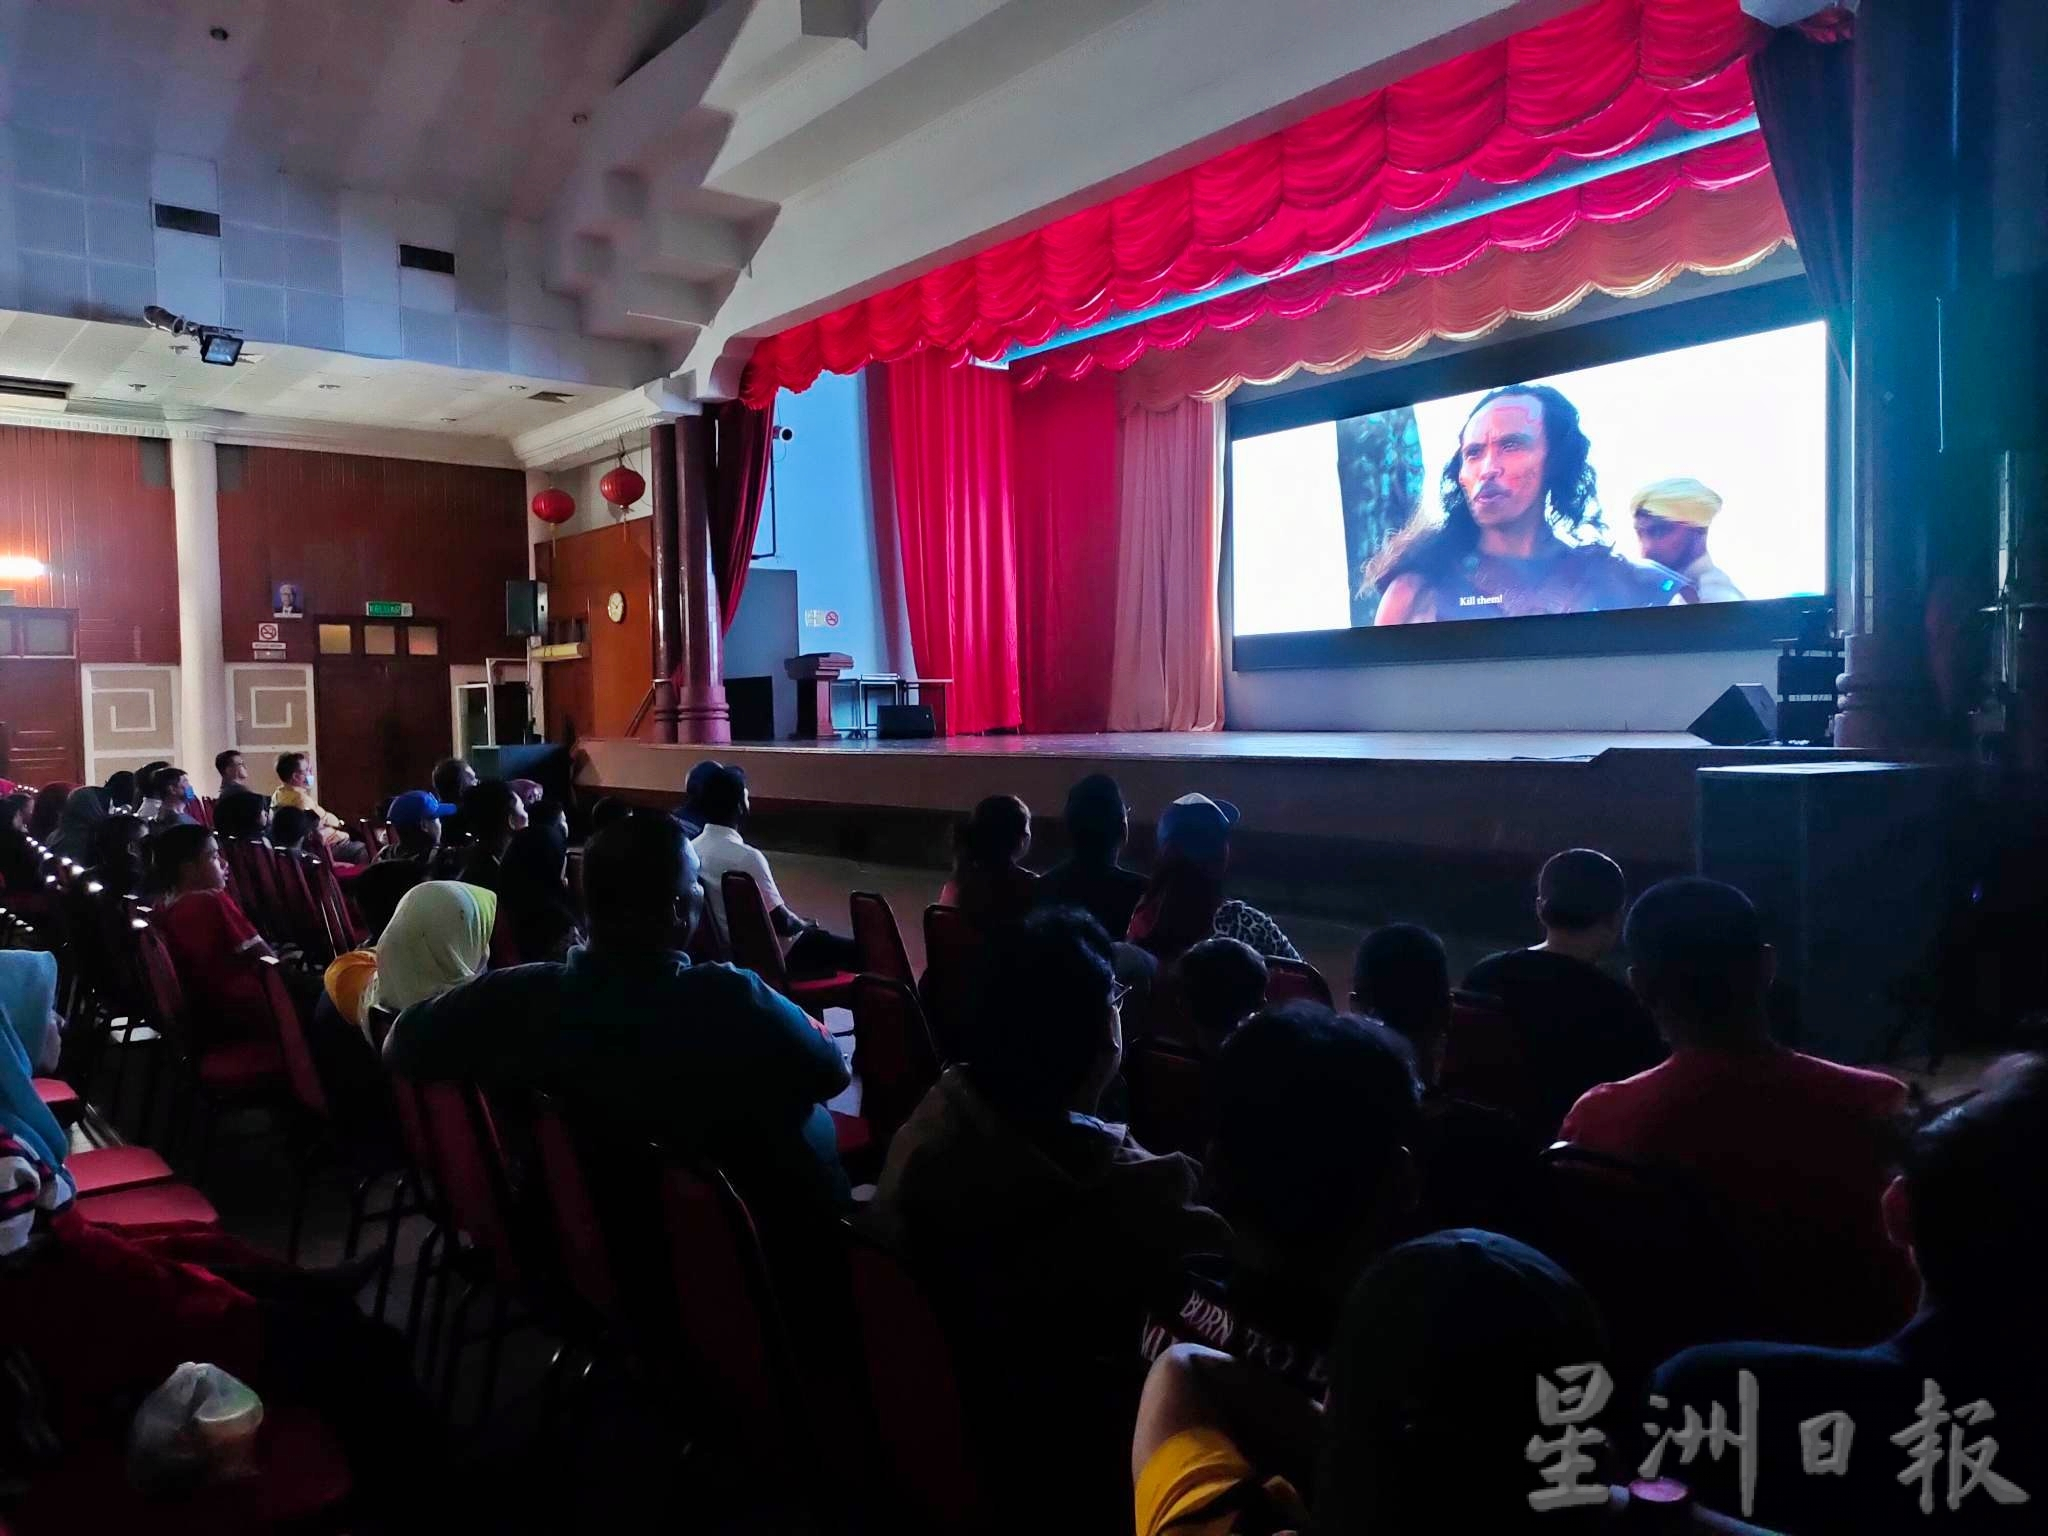 东：哥市有戏院了！哥打峇鲁国席的国阵巫统候选人拿督斯里罗斯玛迪昨晚与市民观赏千万票房国产电影《Mat Kilau》，并表示未来会举办更多的放映会。